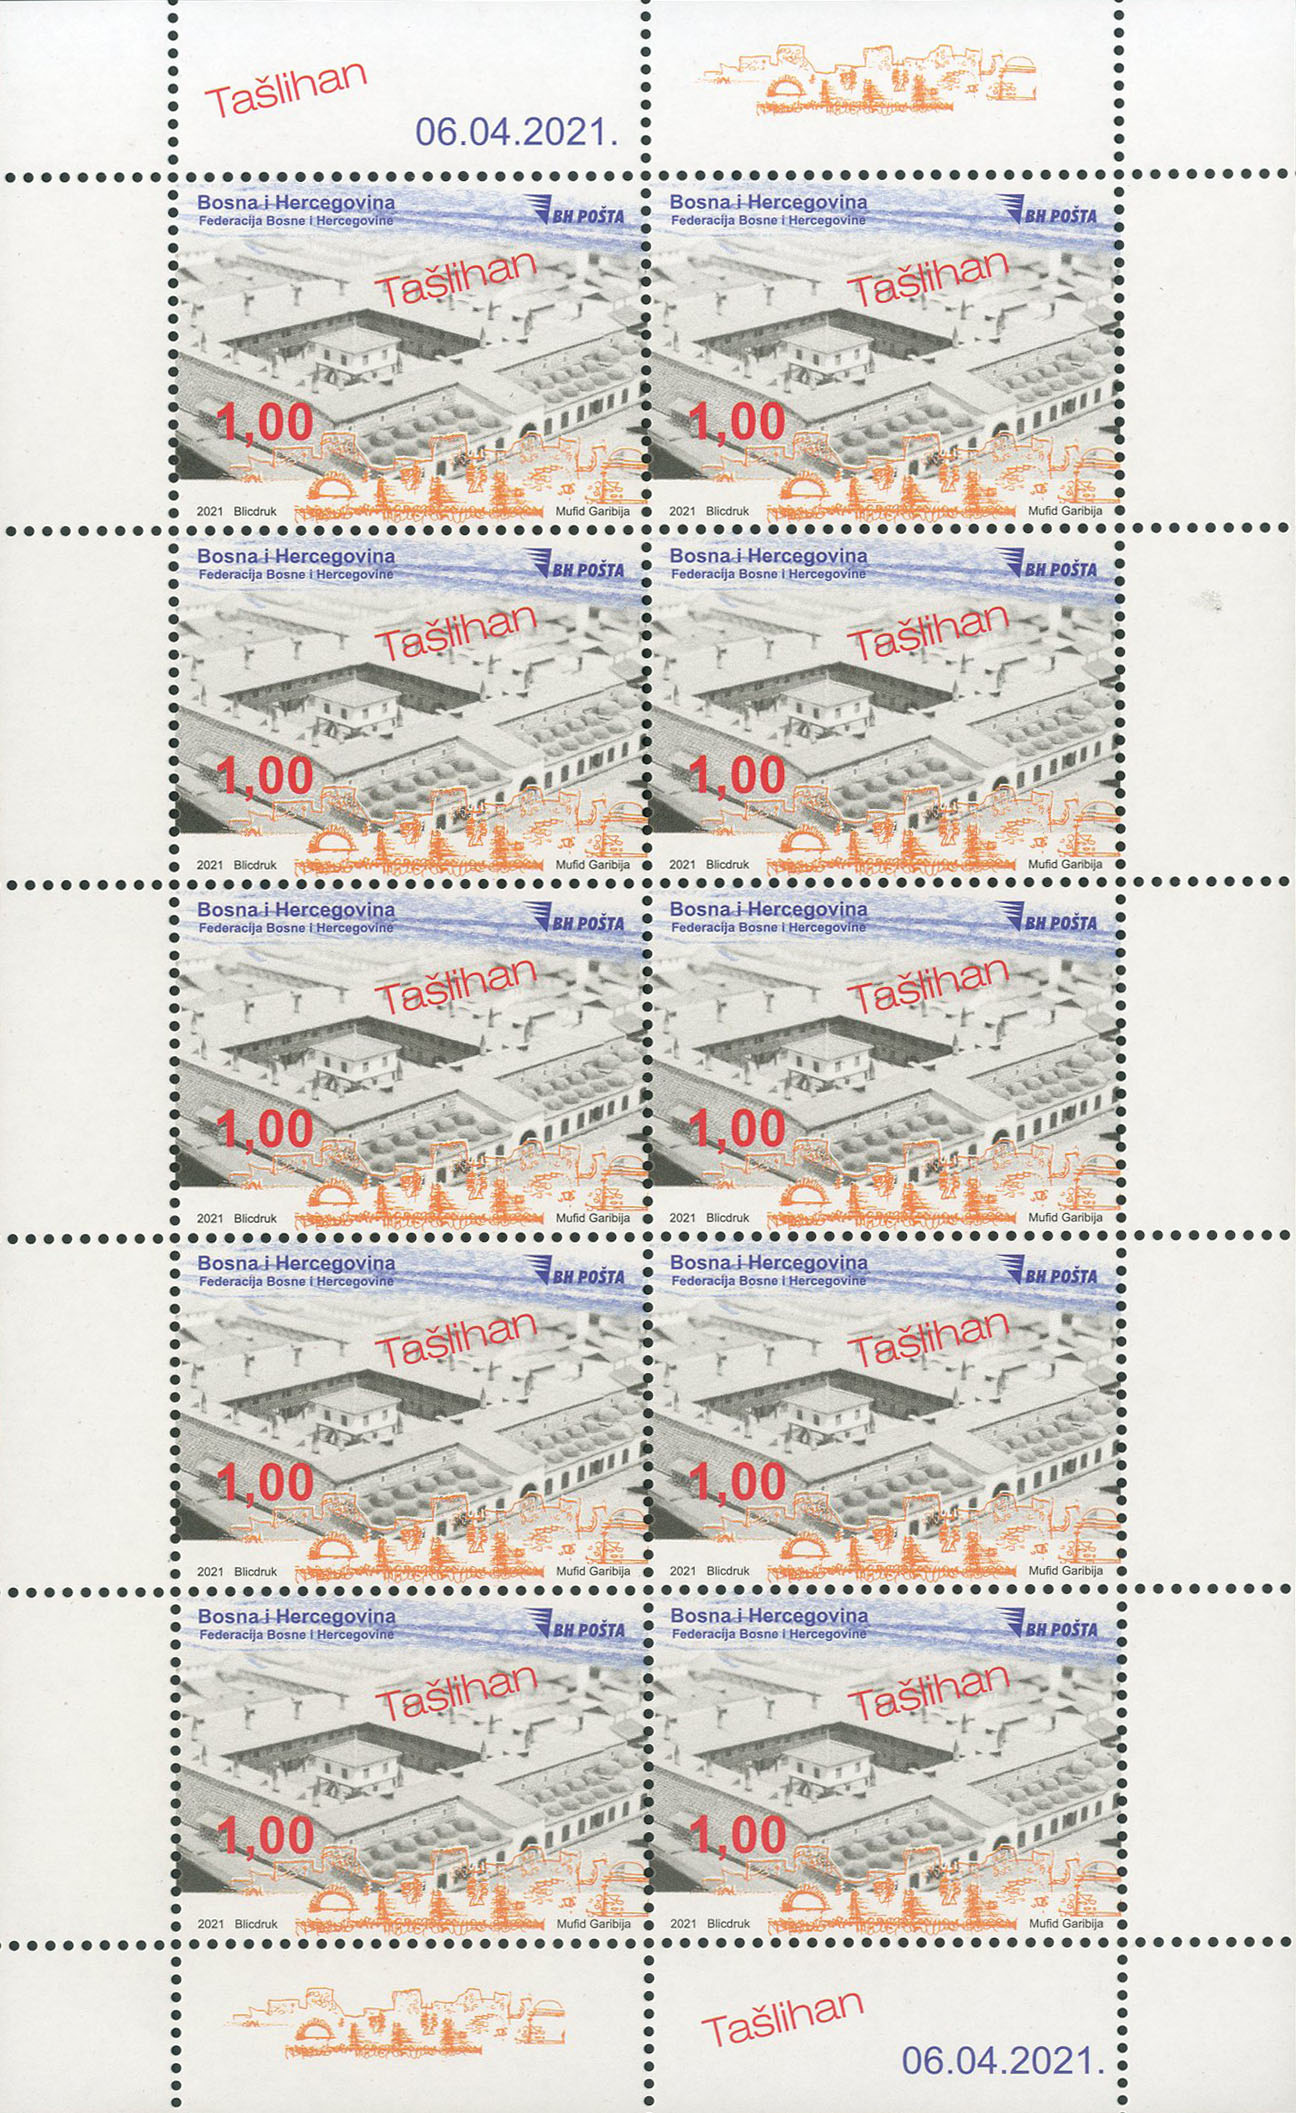 a-special-postage-stamp-taslihan